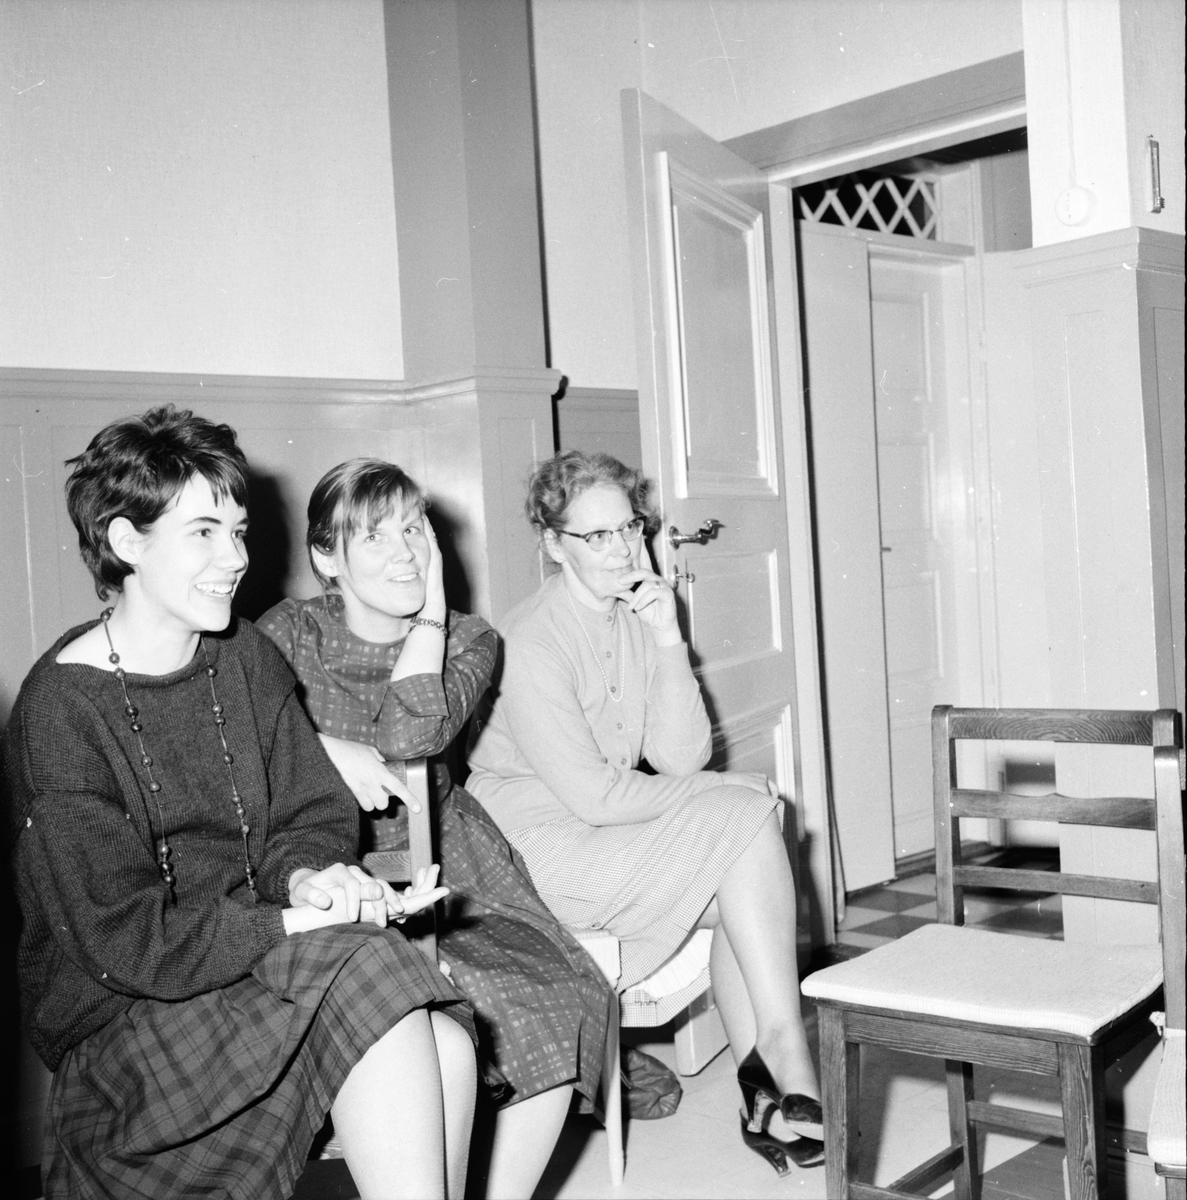 Hembygdsvården och kyrkan,
Finntorpet,
3 Maj 1963